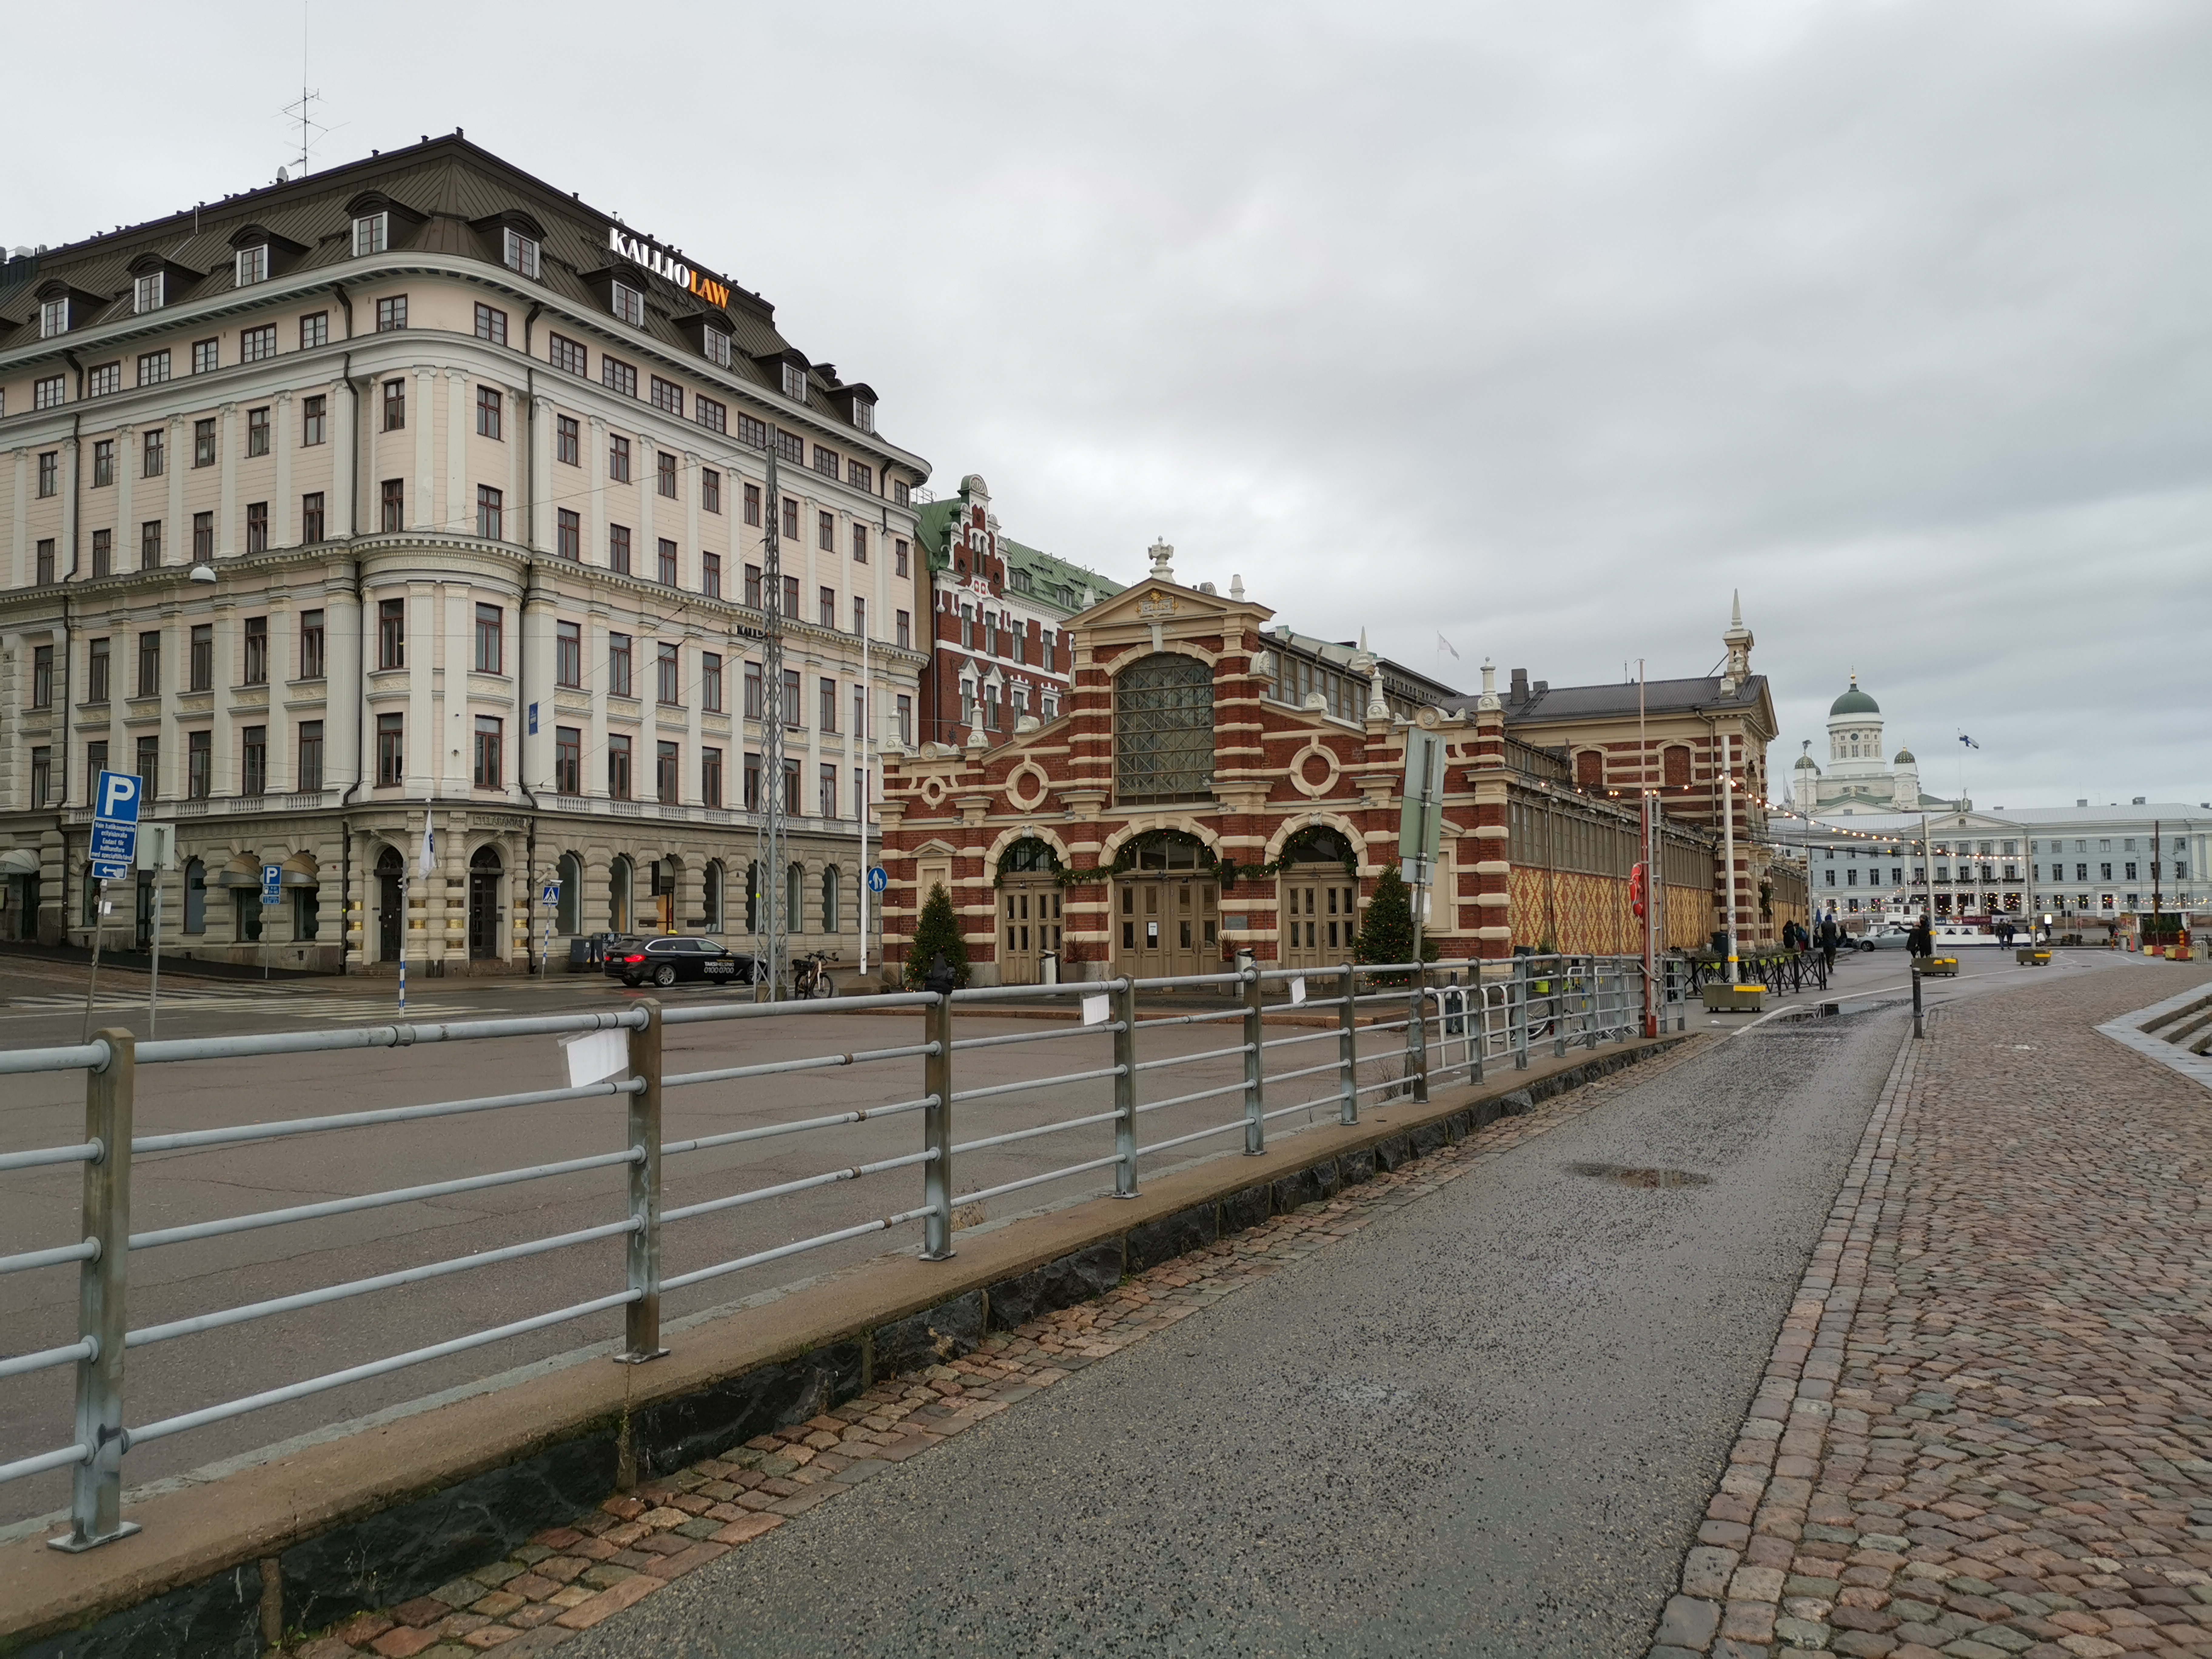 Kauppahalli, G. Nyströmin suunnittelema rakennus valmistui 1889. Oik. Vironallas, vas. Eteläranta 12,14. Taustalla Kaupungintalo ja sen takana Tuomiokirkko. rephoto